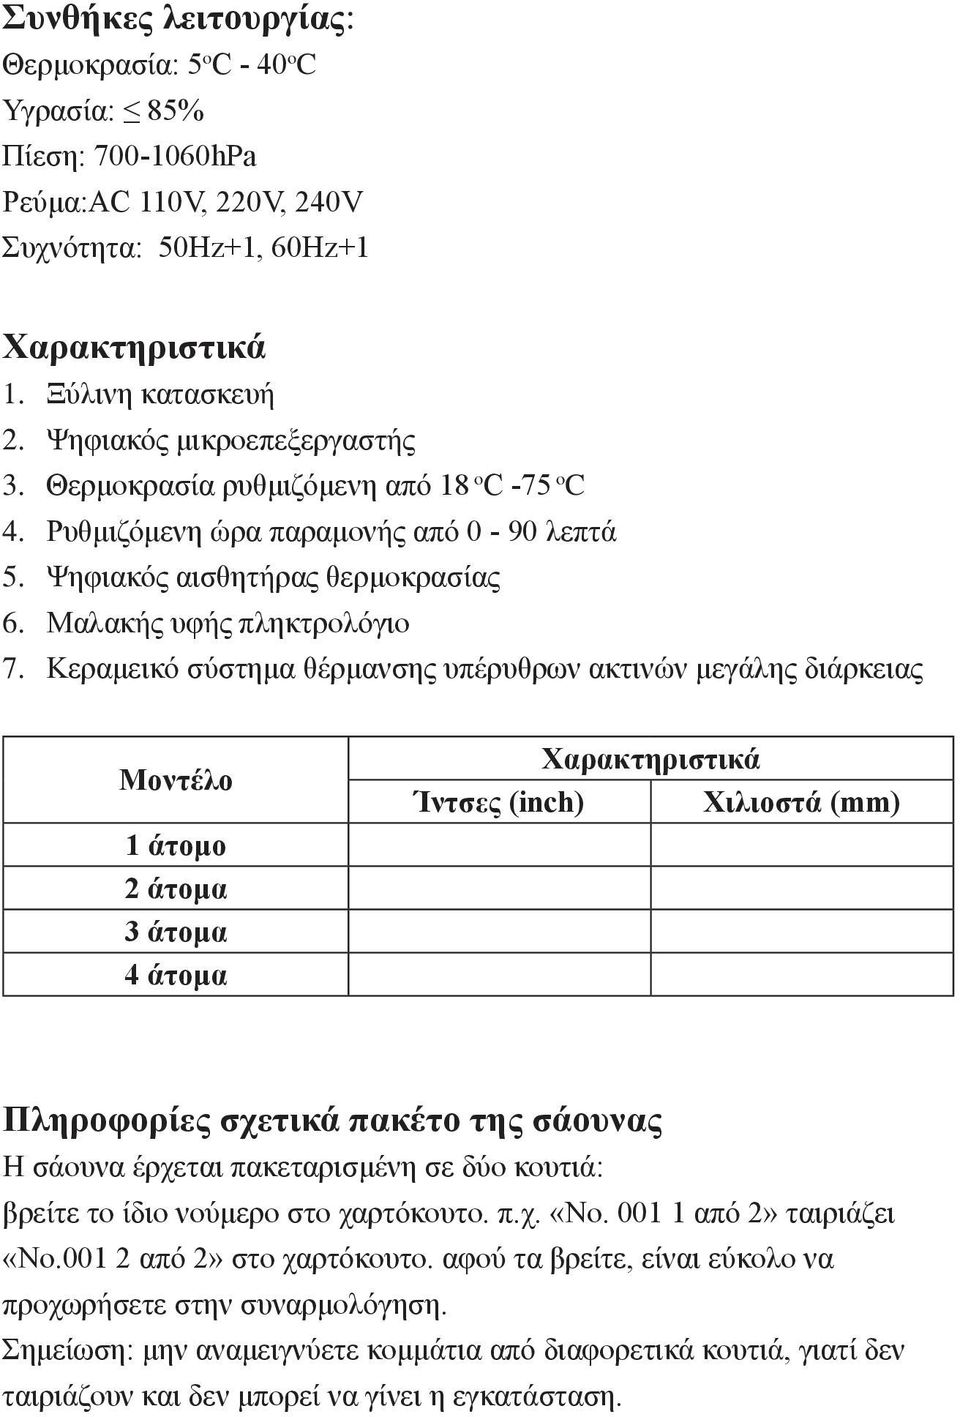 Κεραμεικό σύστημα θέρμανσης υπέρυθρων ακτινών μεγάλης διάρκειας Μοντέλο 1 άτομο 2 άτομα 3 άτομα 4 άτομα Χαρακτηριστικά Ίντσες (inch) Χιλιοστά (mm) Πληροφορίες σχετικά πακέτο της σάουνας Η σάουνα